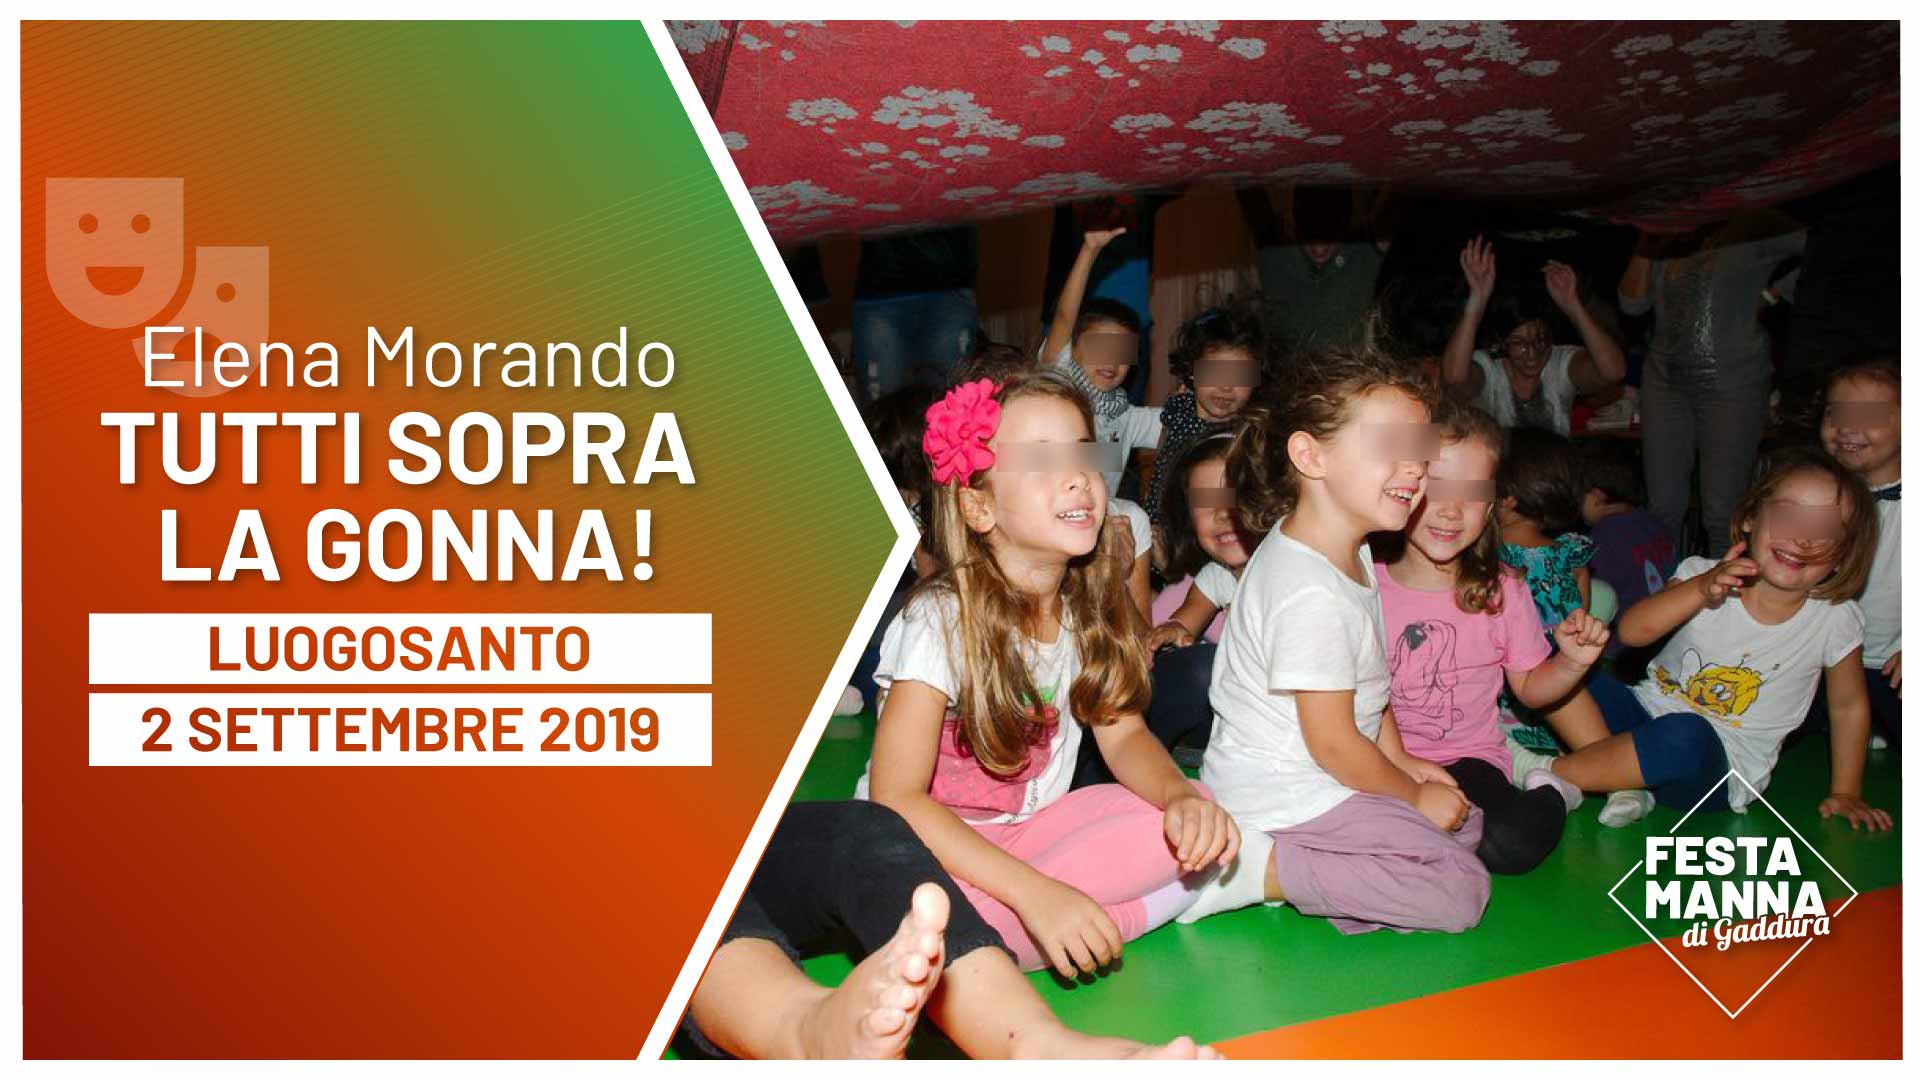 “Tutti sopra la gonna!”, Lesungen für Kinder von Elena Morando | Festa Manna di Gaddura 2019